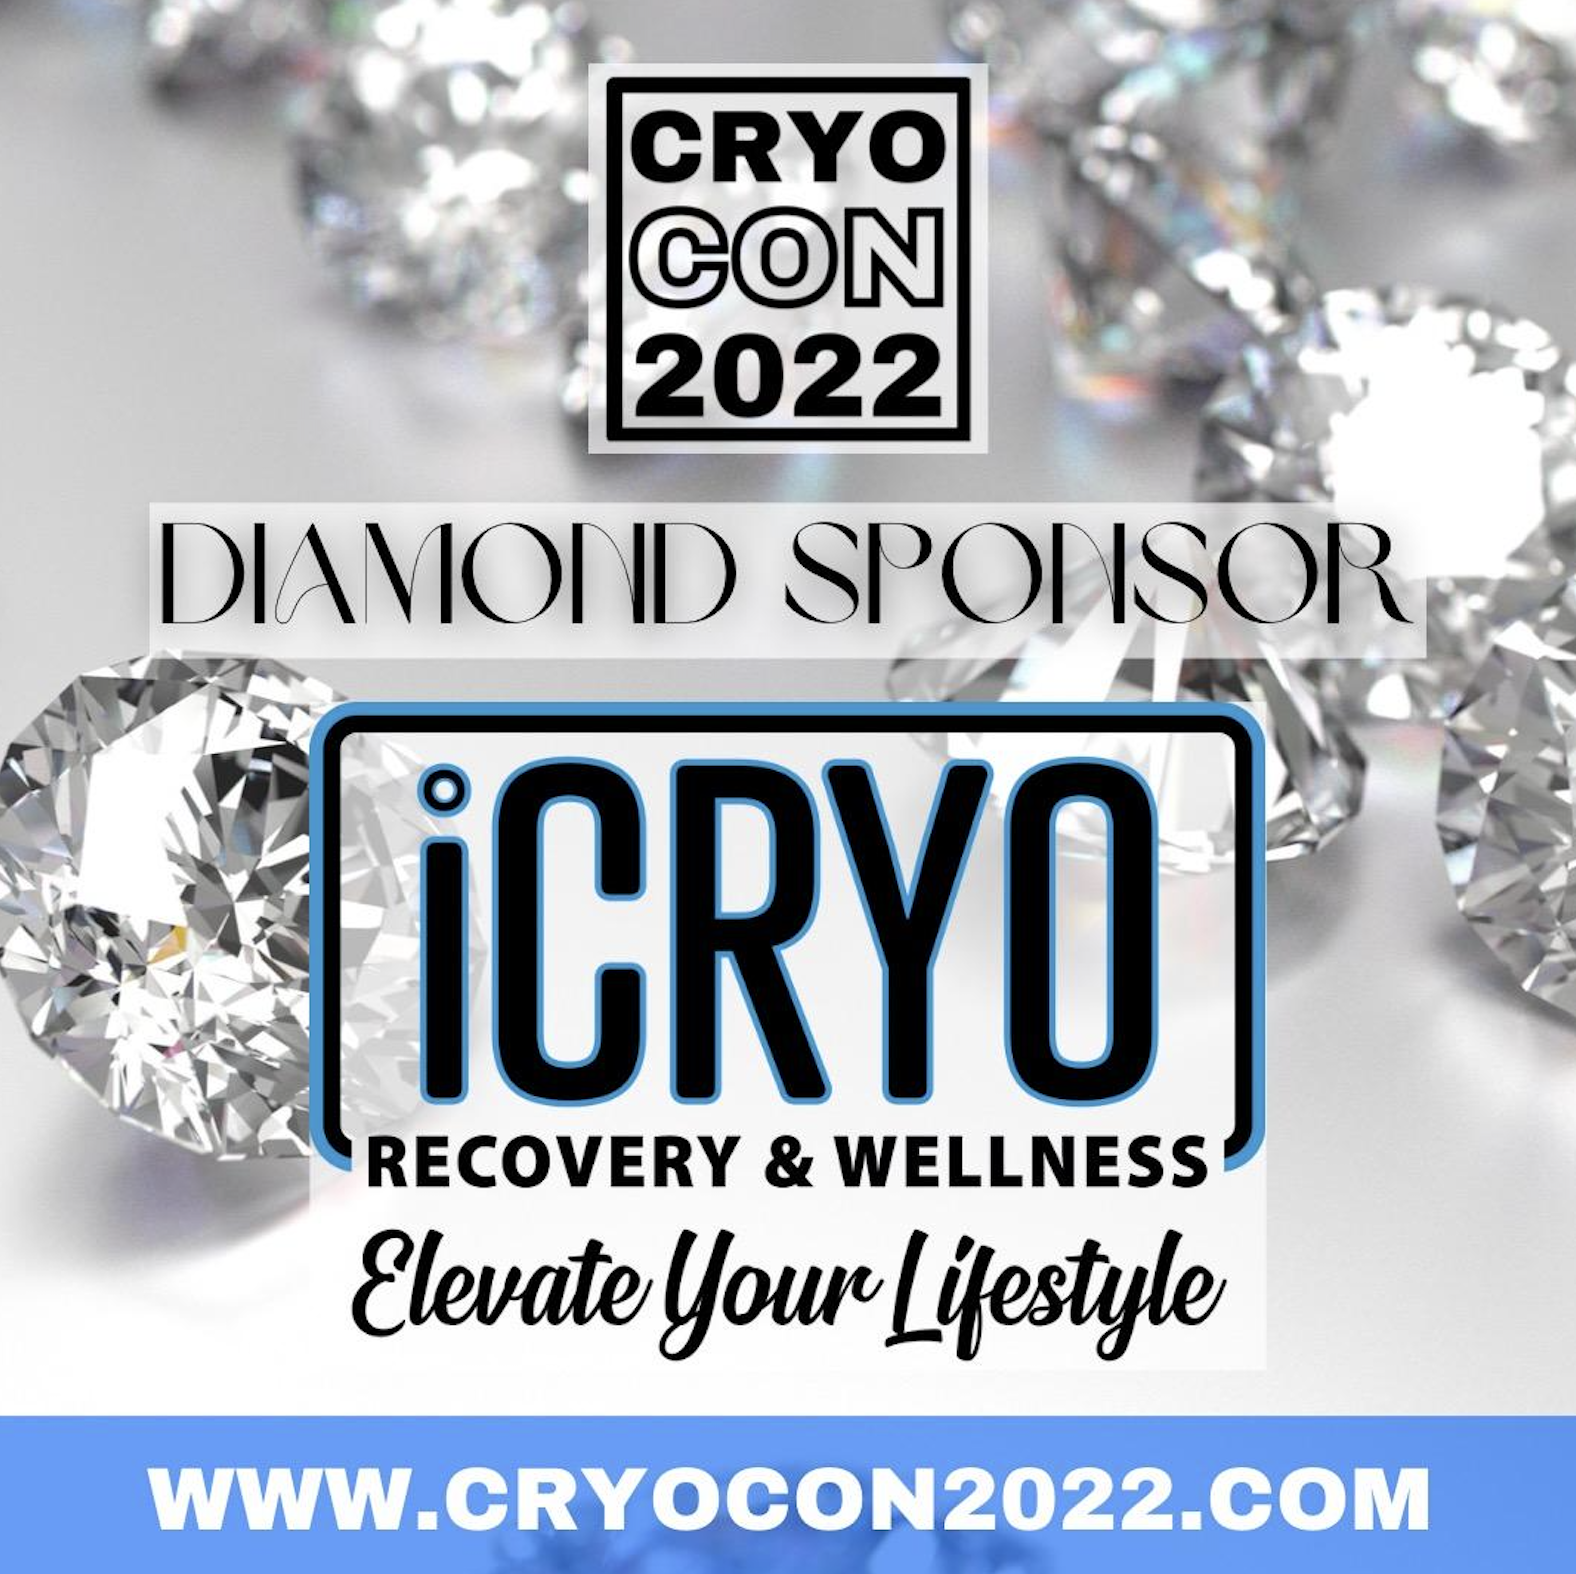 iCRYO to Attend CryoCon 2022 as Diamond Sponsor